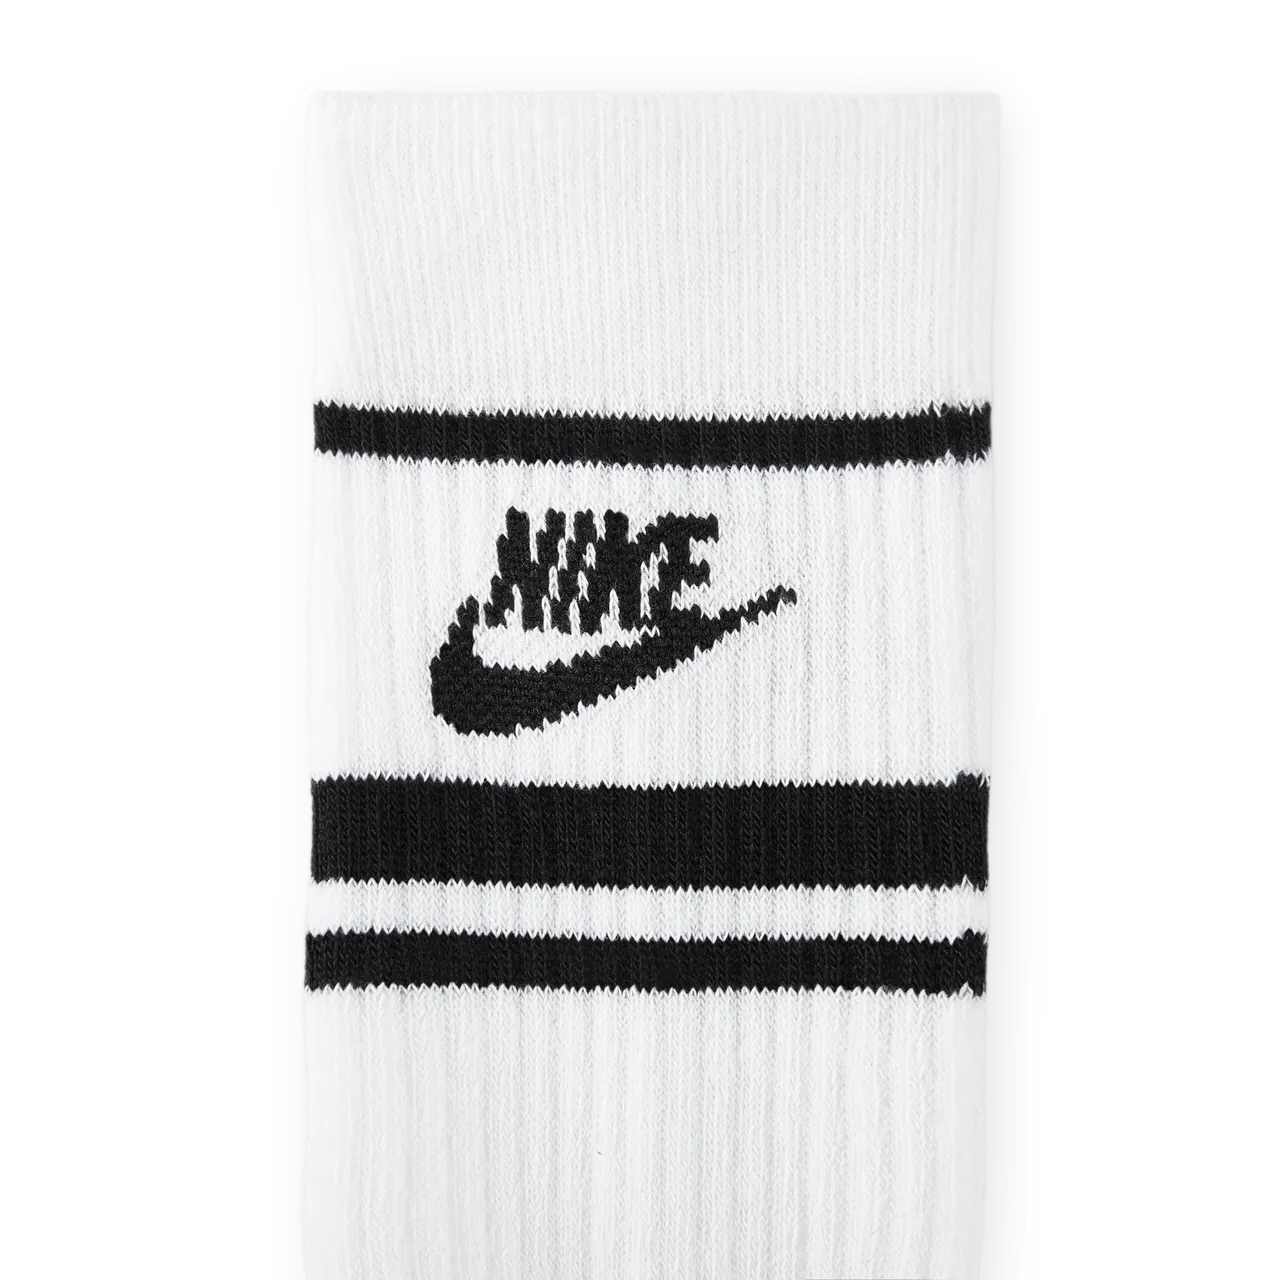 Nike Sportswear Dri-FIT Everyday Essential crew sokken (3 paar) - Wit